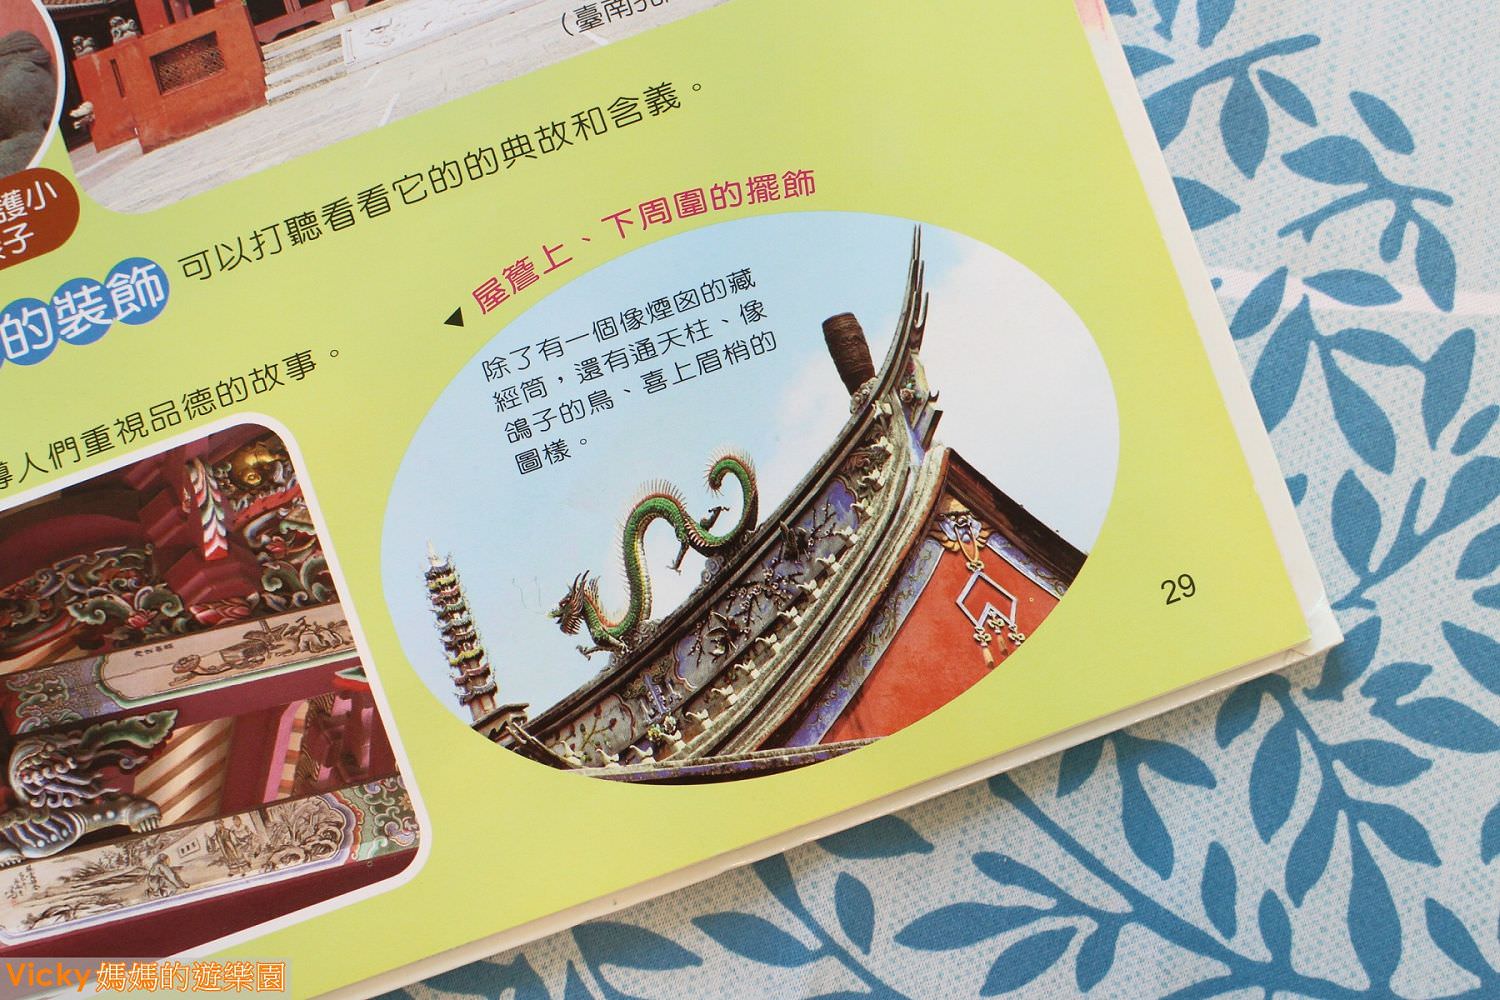 親子共讀︱台南旅遊繪本：小石獅遊府城，兒童專屬旅遊書，一起逛遍古蹟、嘗遍美食